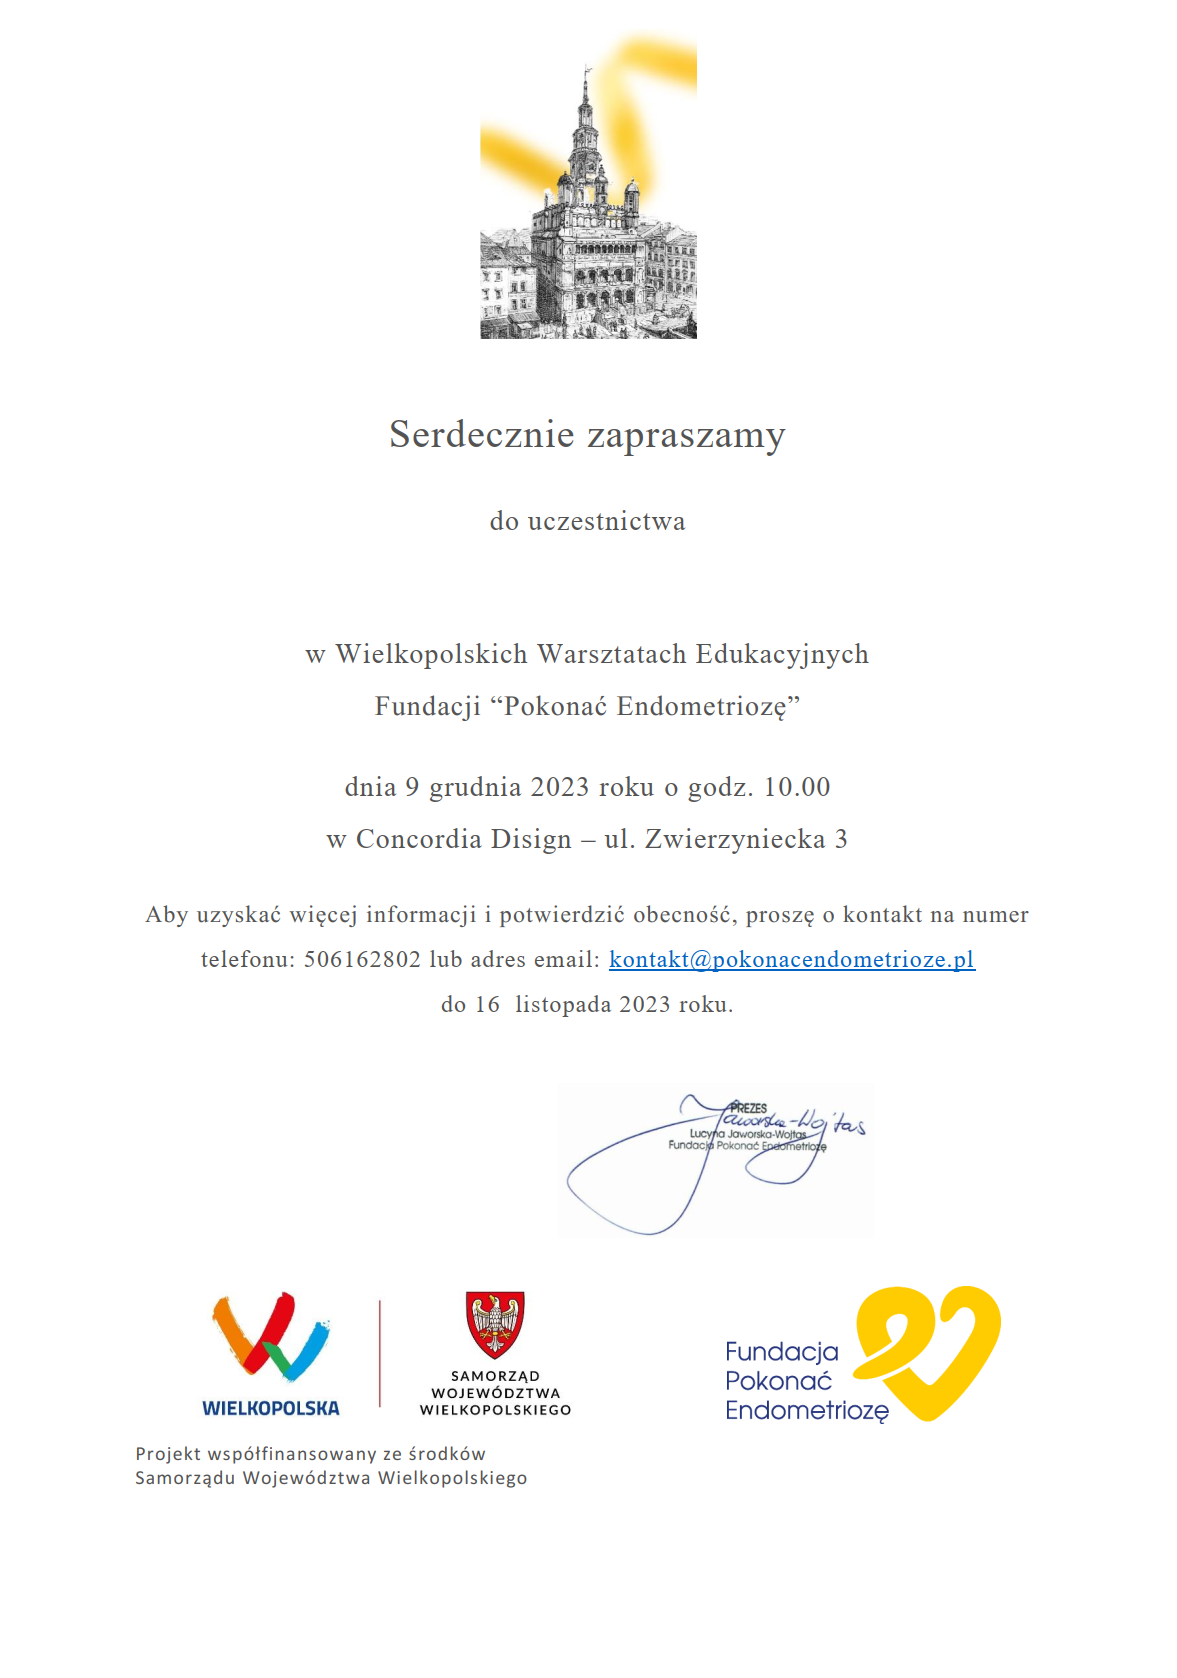 Ilustracja do informacji: Wielkopolskie Warsztaty Edukacyjne Fundacji Pokonać Endometriozę